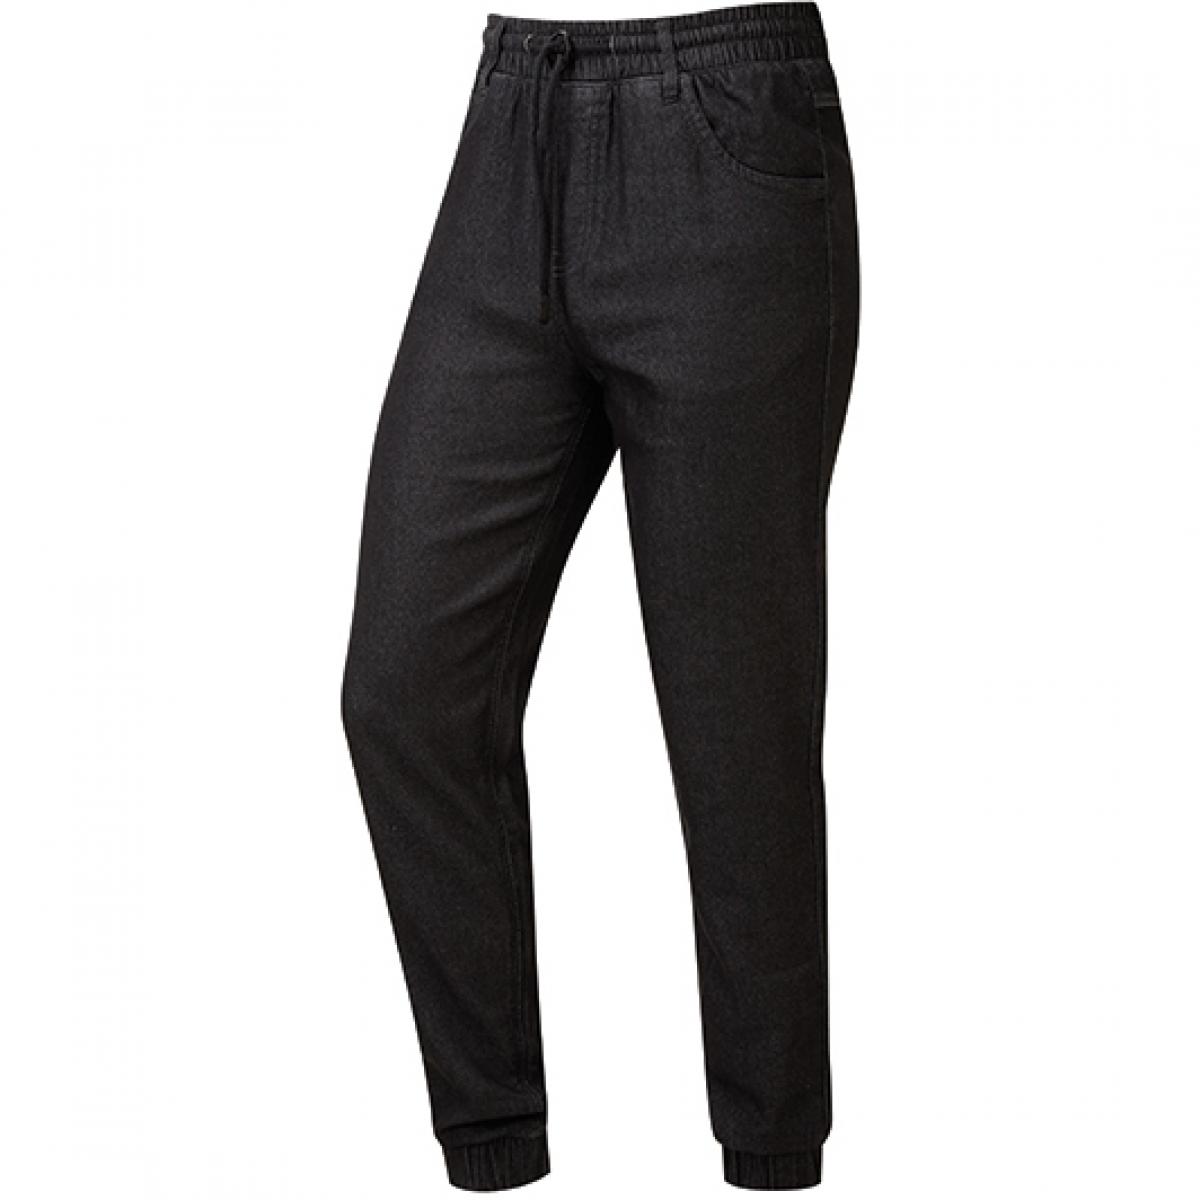 Hersteller: Premier Workwear Herstellernummer: PR556 Artikelbezeichnung: Artisan Chefs Jogging Trousers, Länge: 82 cm Farbe: Black Denim (ca. Pantone 426C)